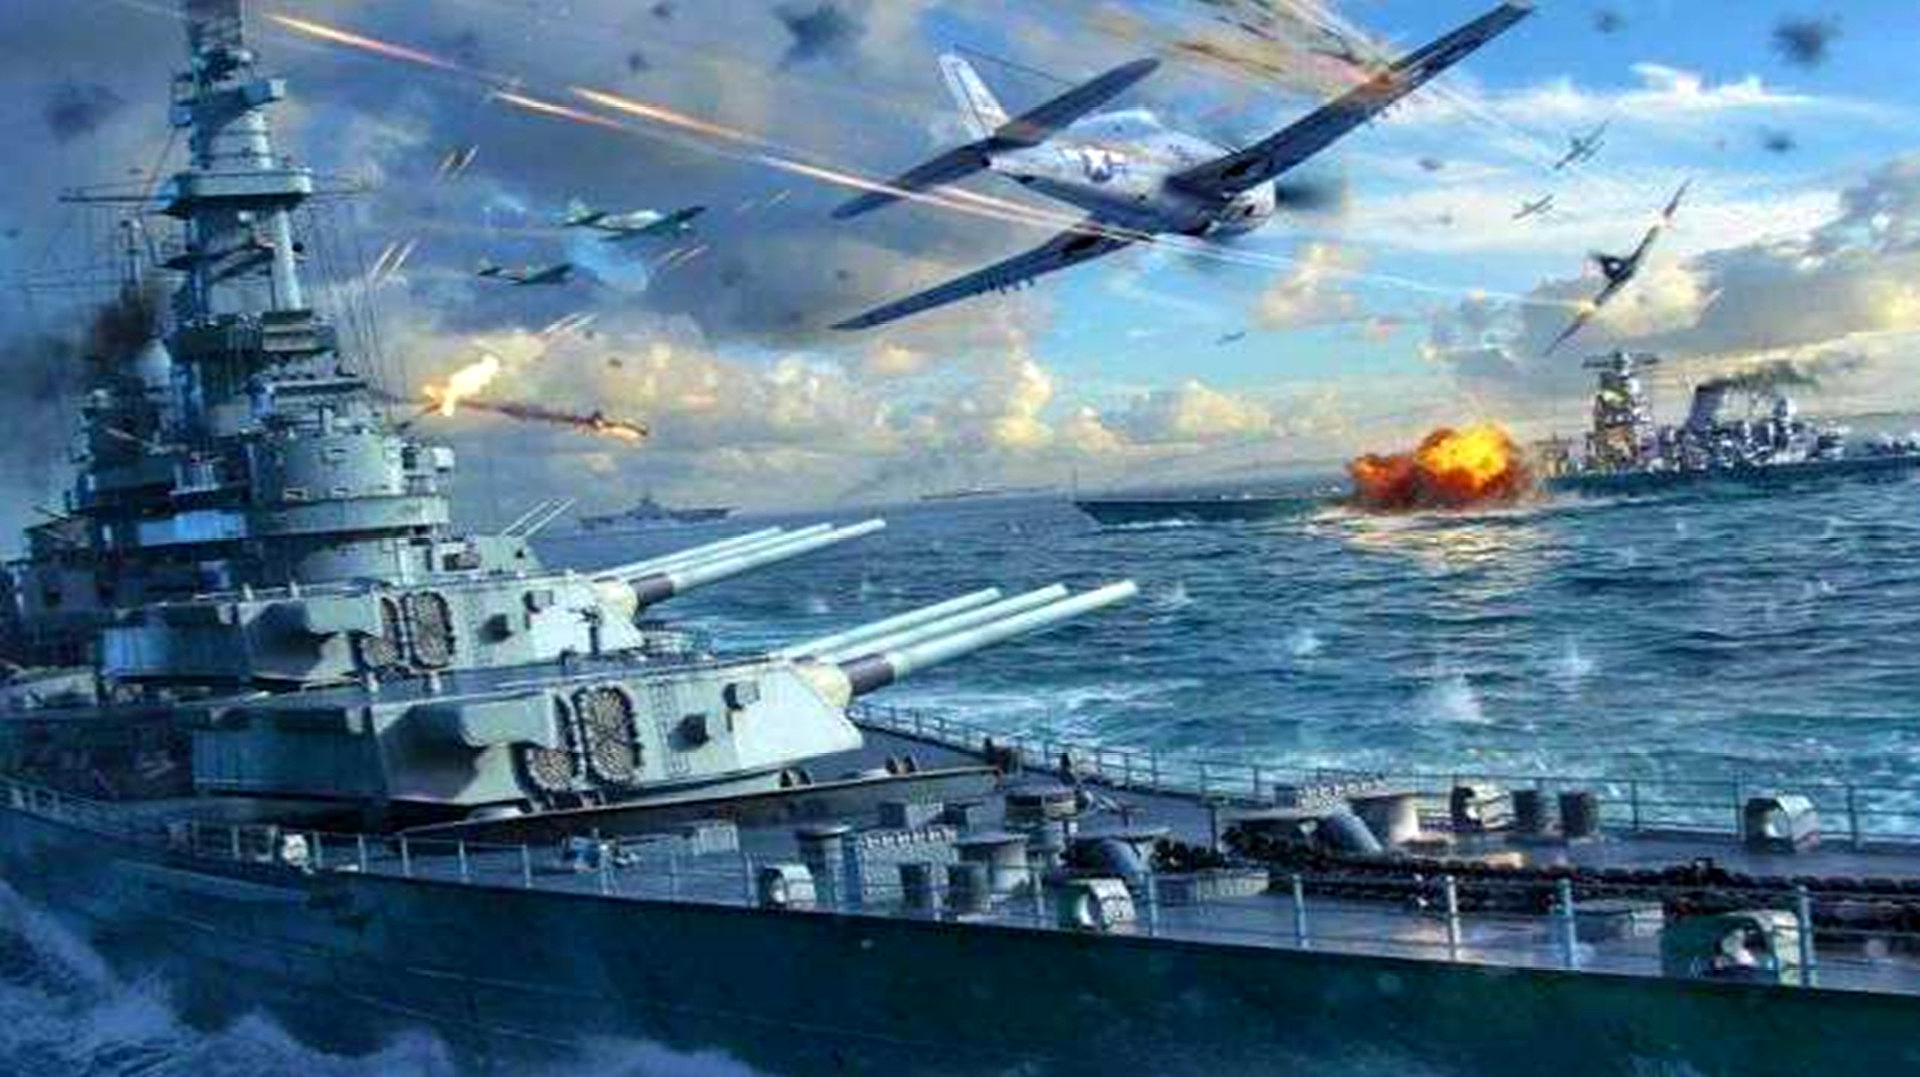 战争电影:二战时期,日军偷袭珍珠港,太平洋舰队几乎全军覆没